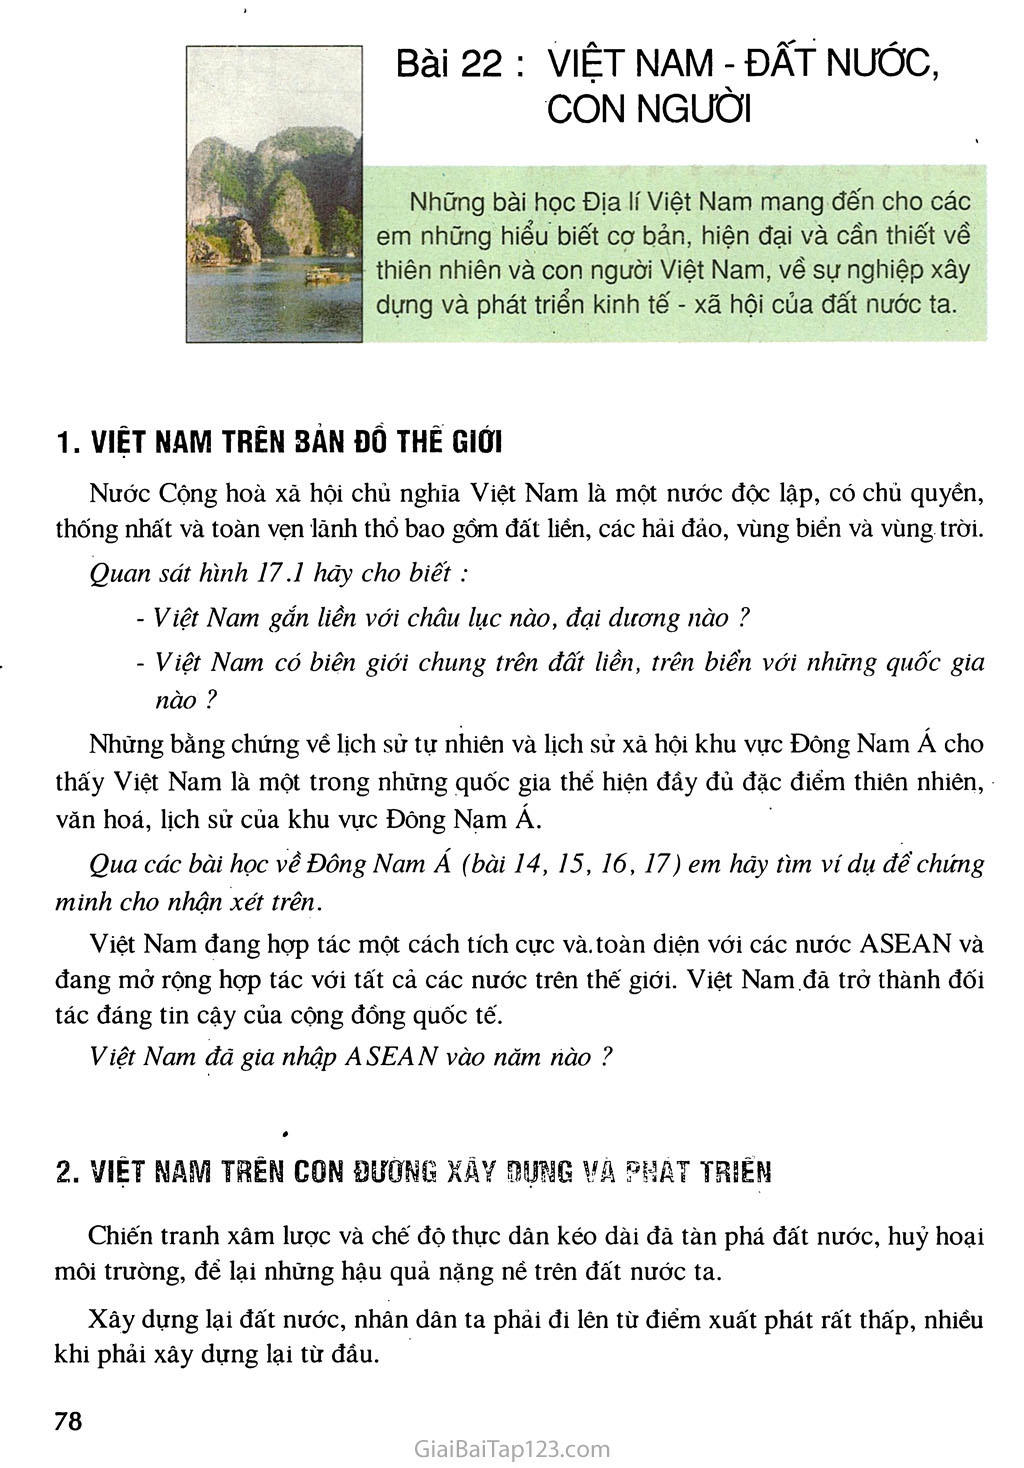 Bài 22. Việt Nam - đất nước, con người trang 1